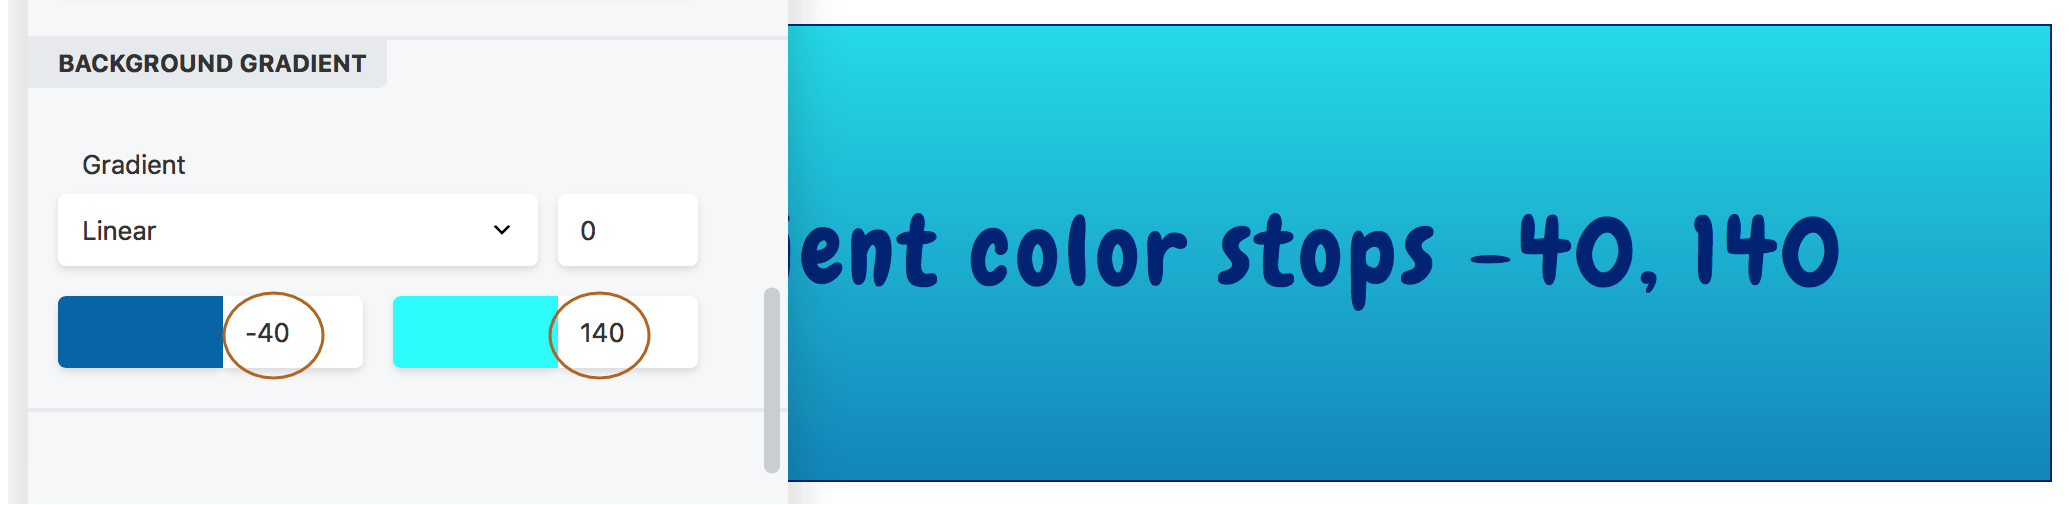 row-columns-color-gradients-7-4309727fc031d7d54af4468c20d2f4c5